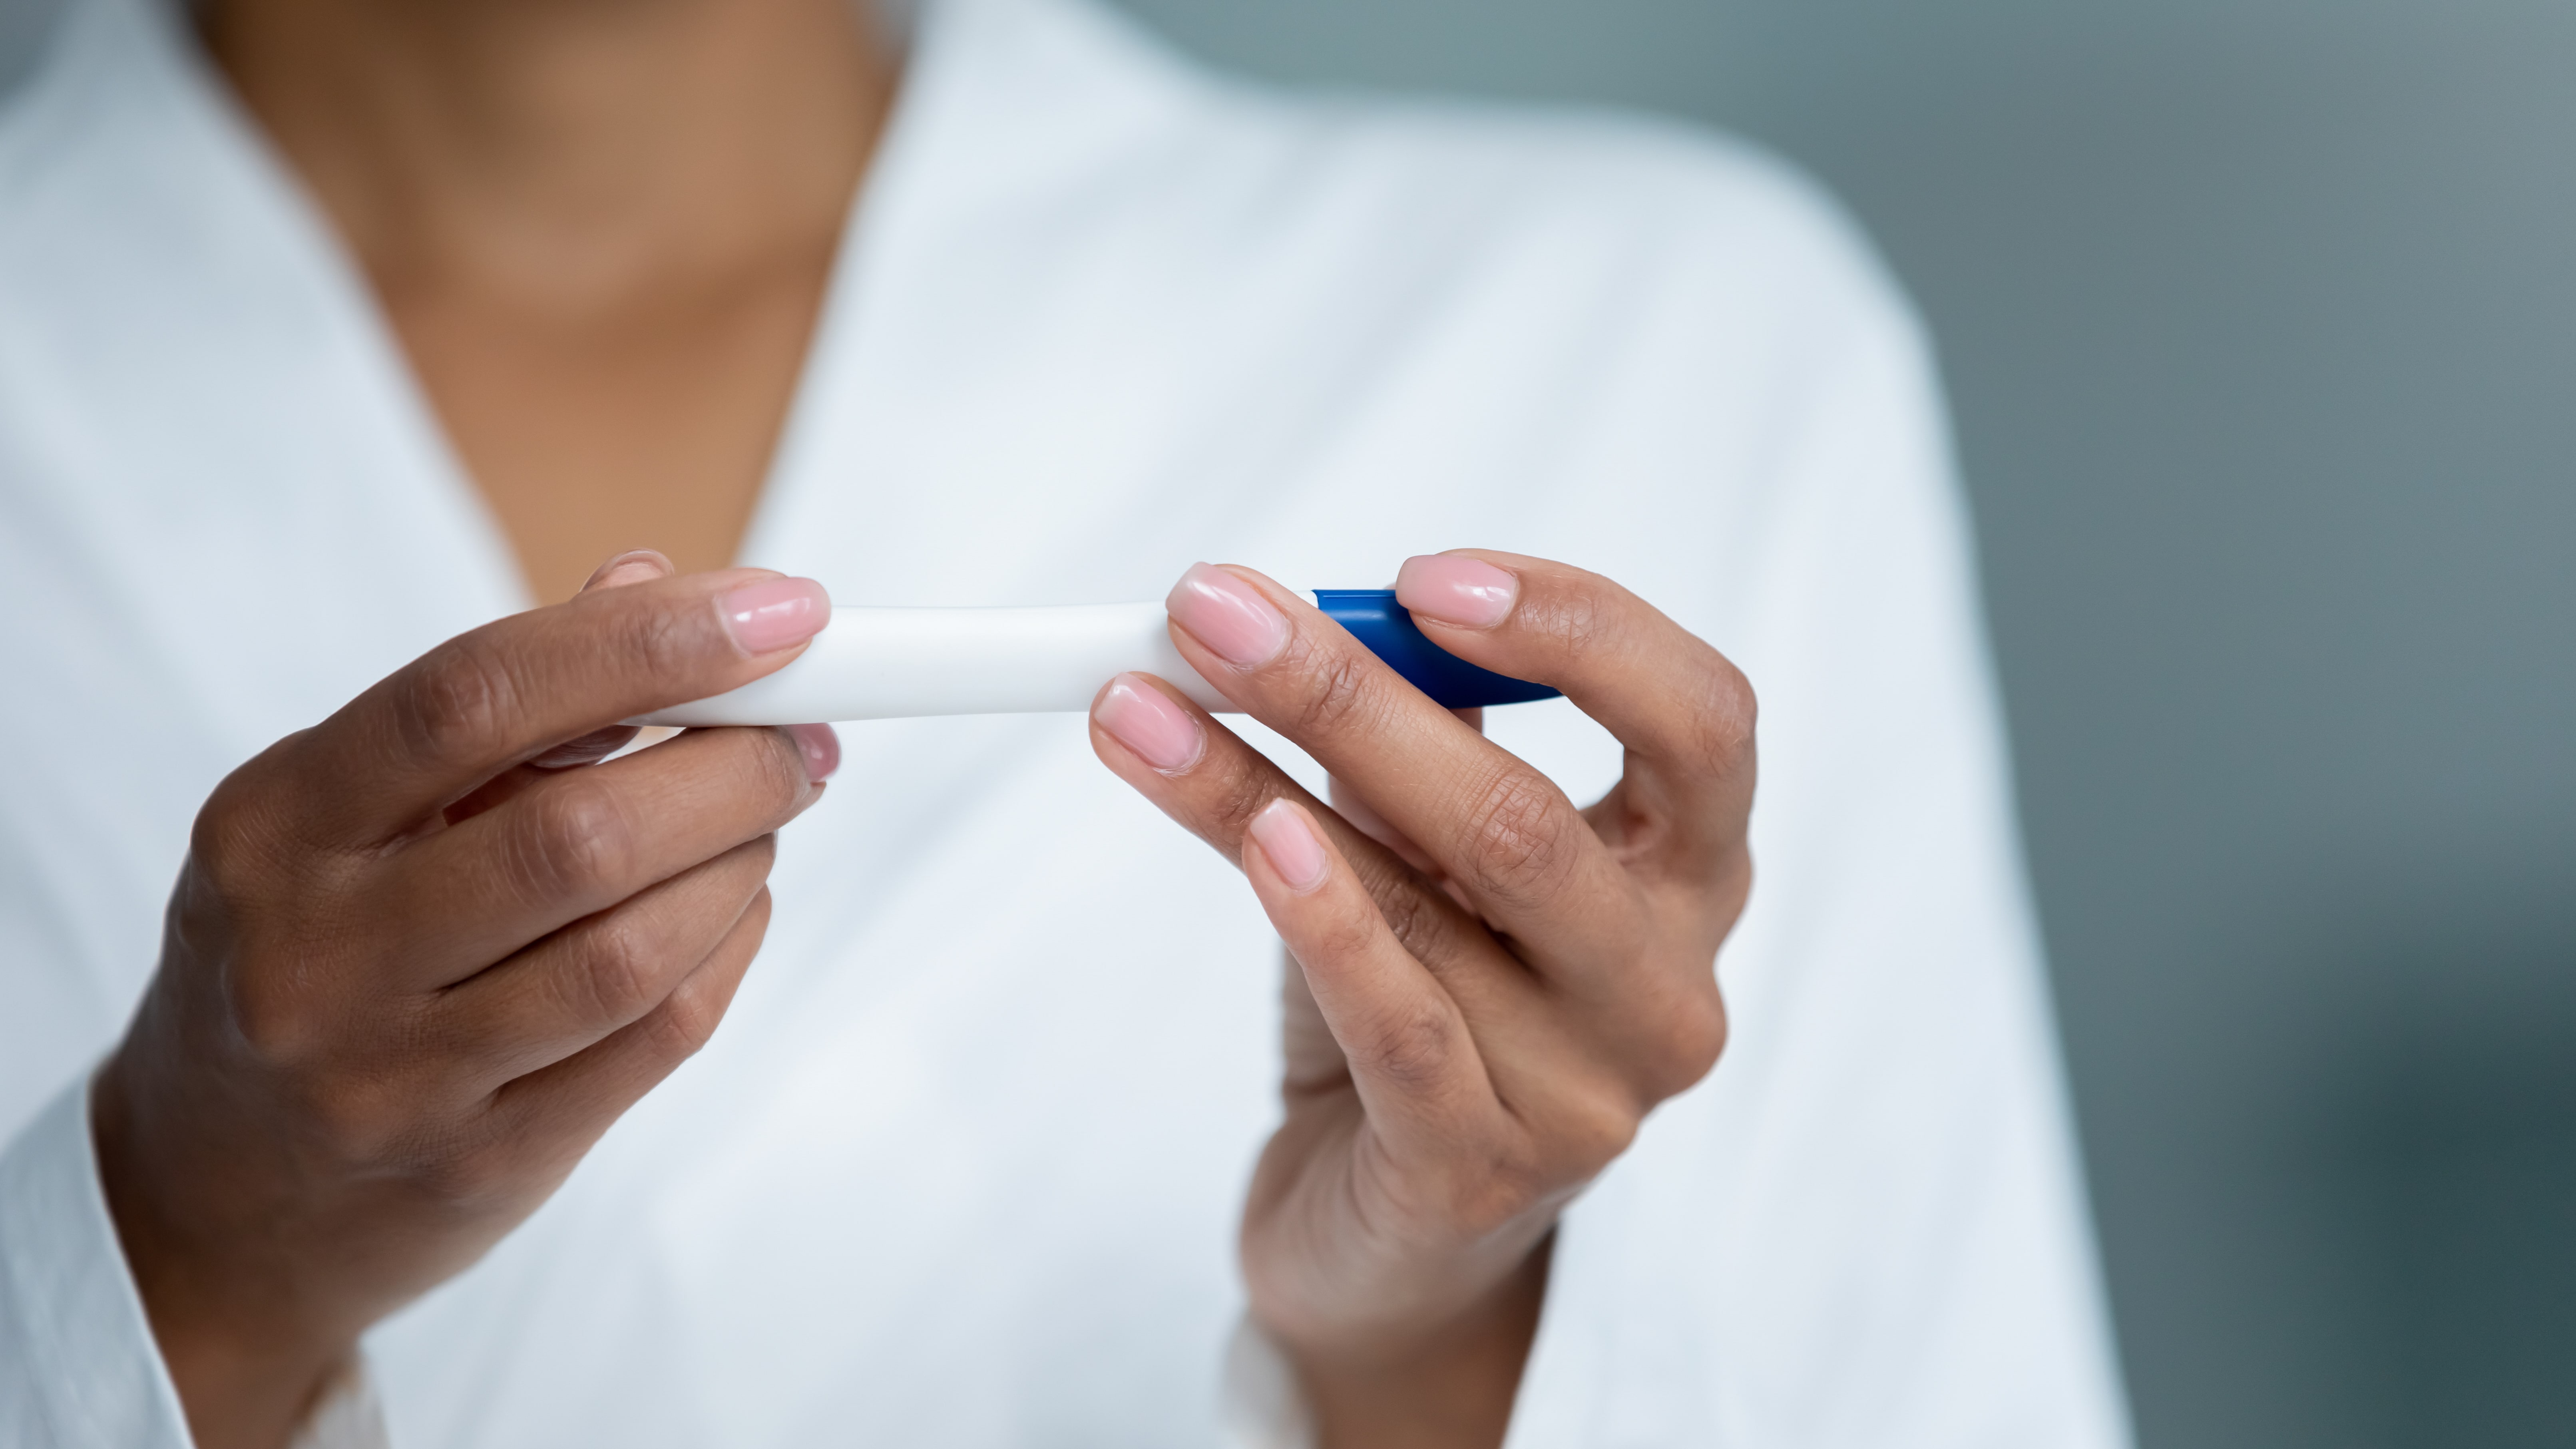     « Rêve d’être Mère », une association créée pour soutenir les couples souffrant d’infertilité

